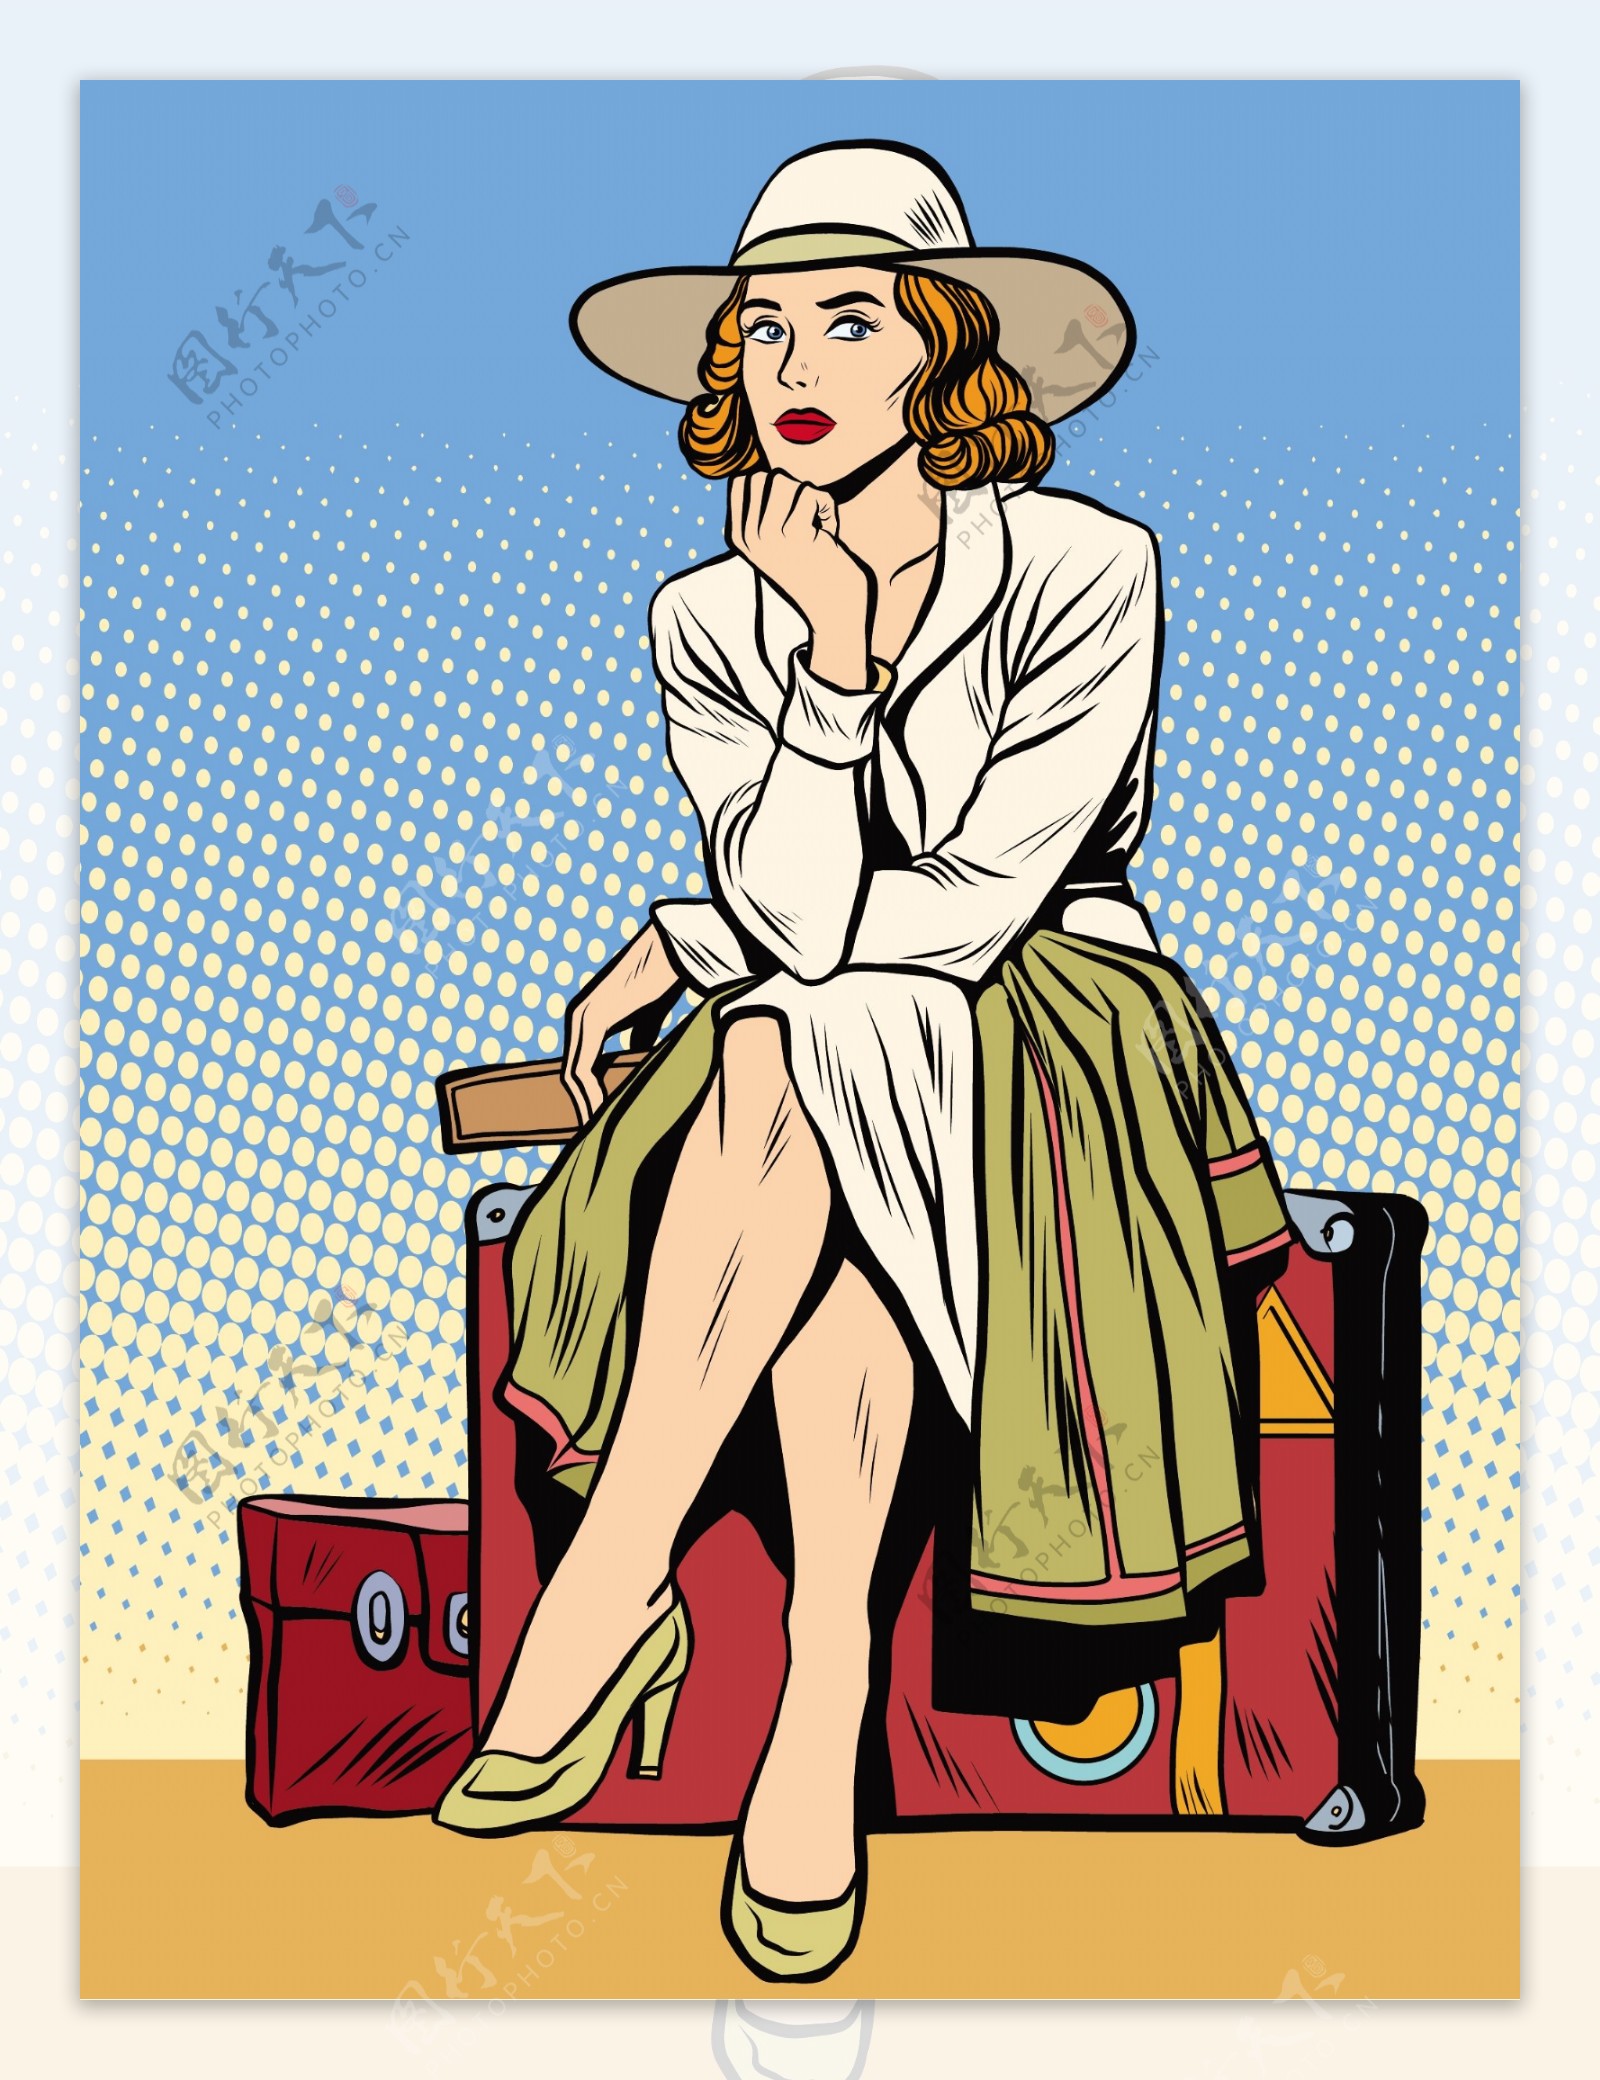 坐在旅行箱的女人漫画风格人物矢量素材